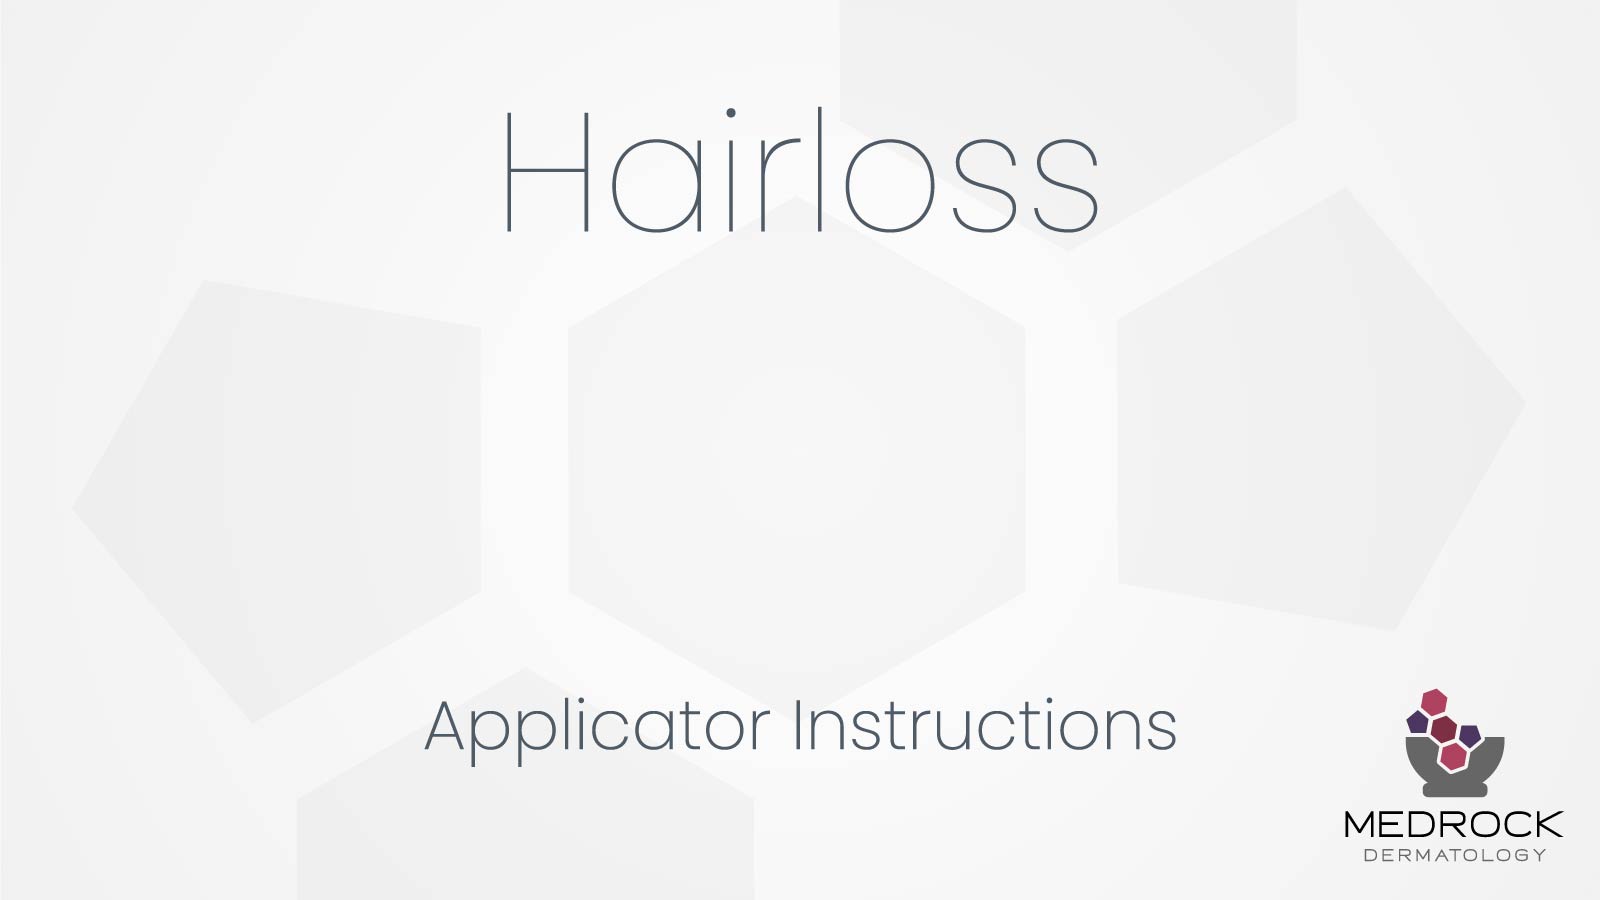 Alopecia Hairloss Applicator Instructions